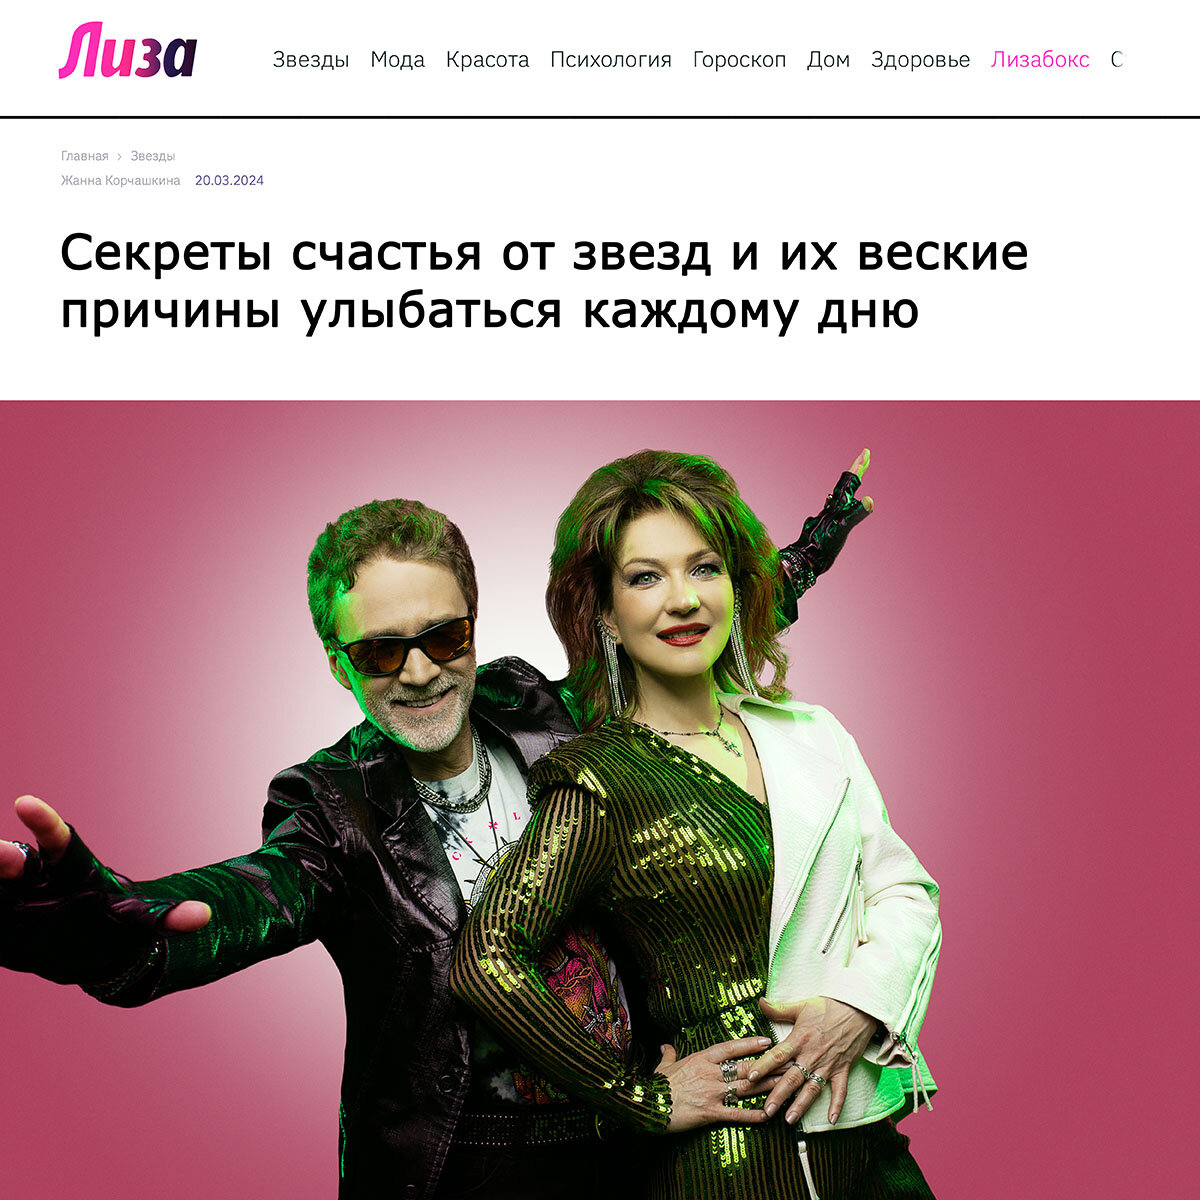 Знаменитости откровенничают с читательницами Lisa.ru на тему счастья и подтверждают простую истину о том, что оно скрывается в мелочах.